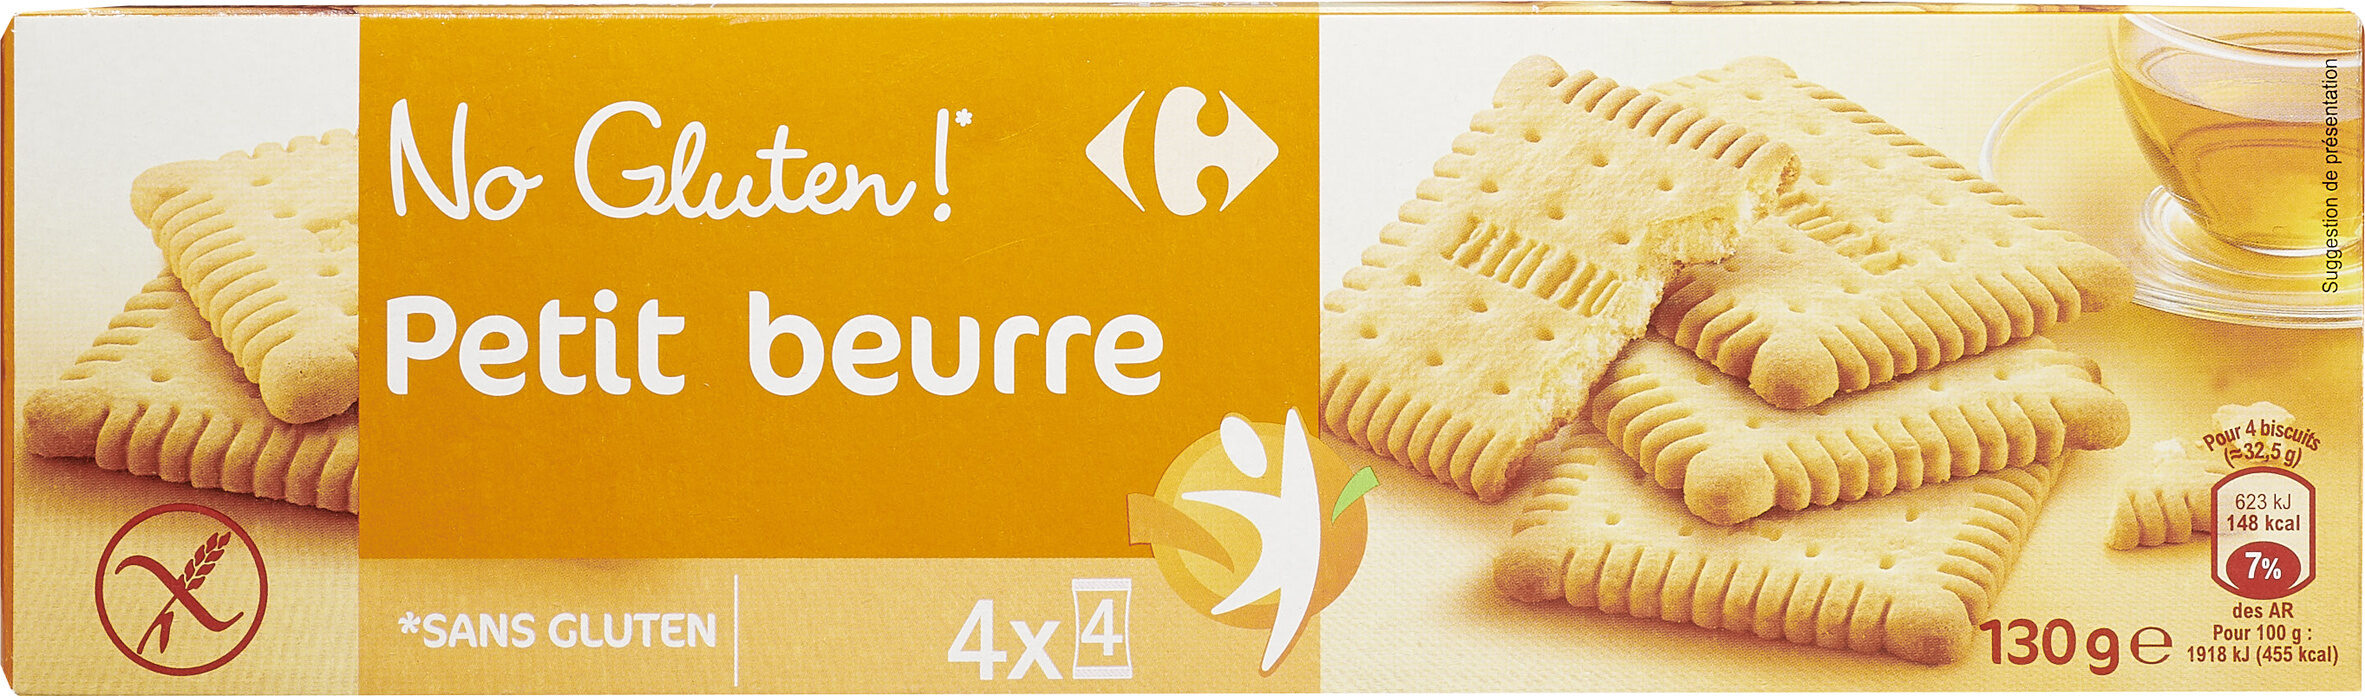 Petit beurre - Produit